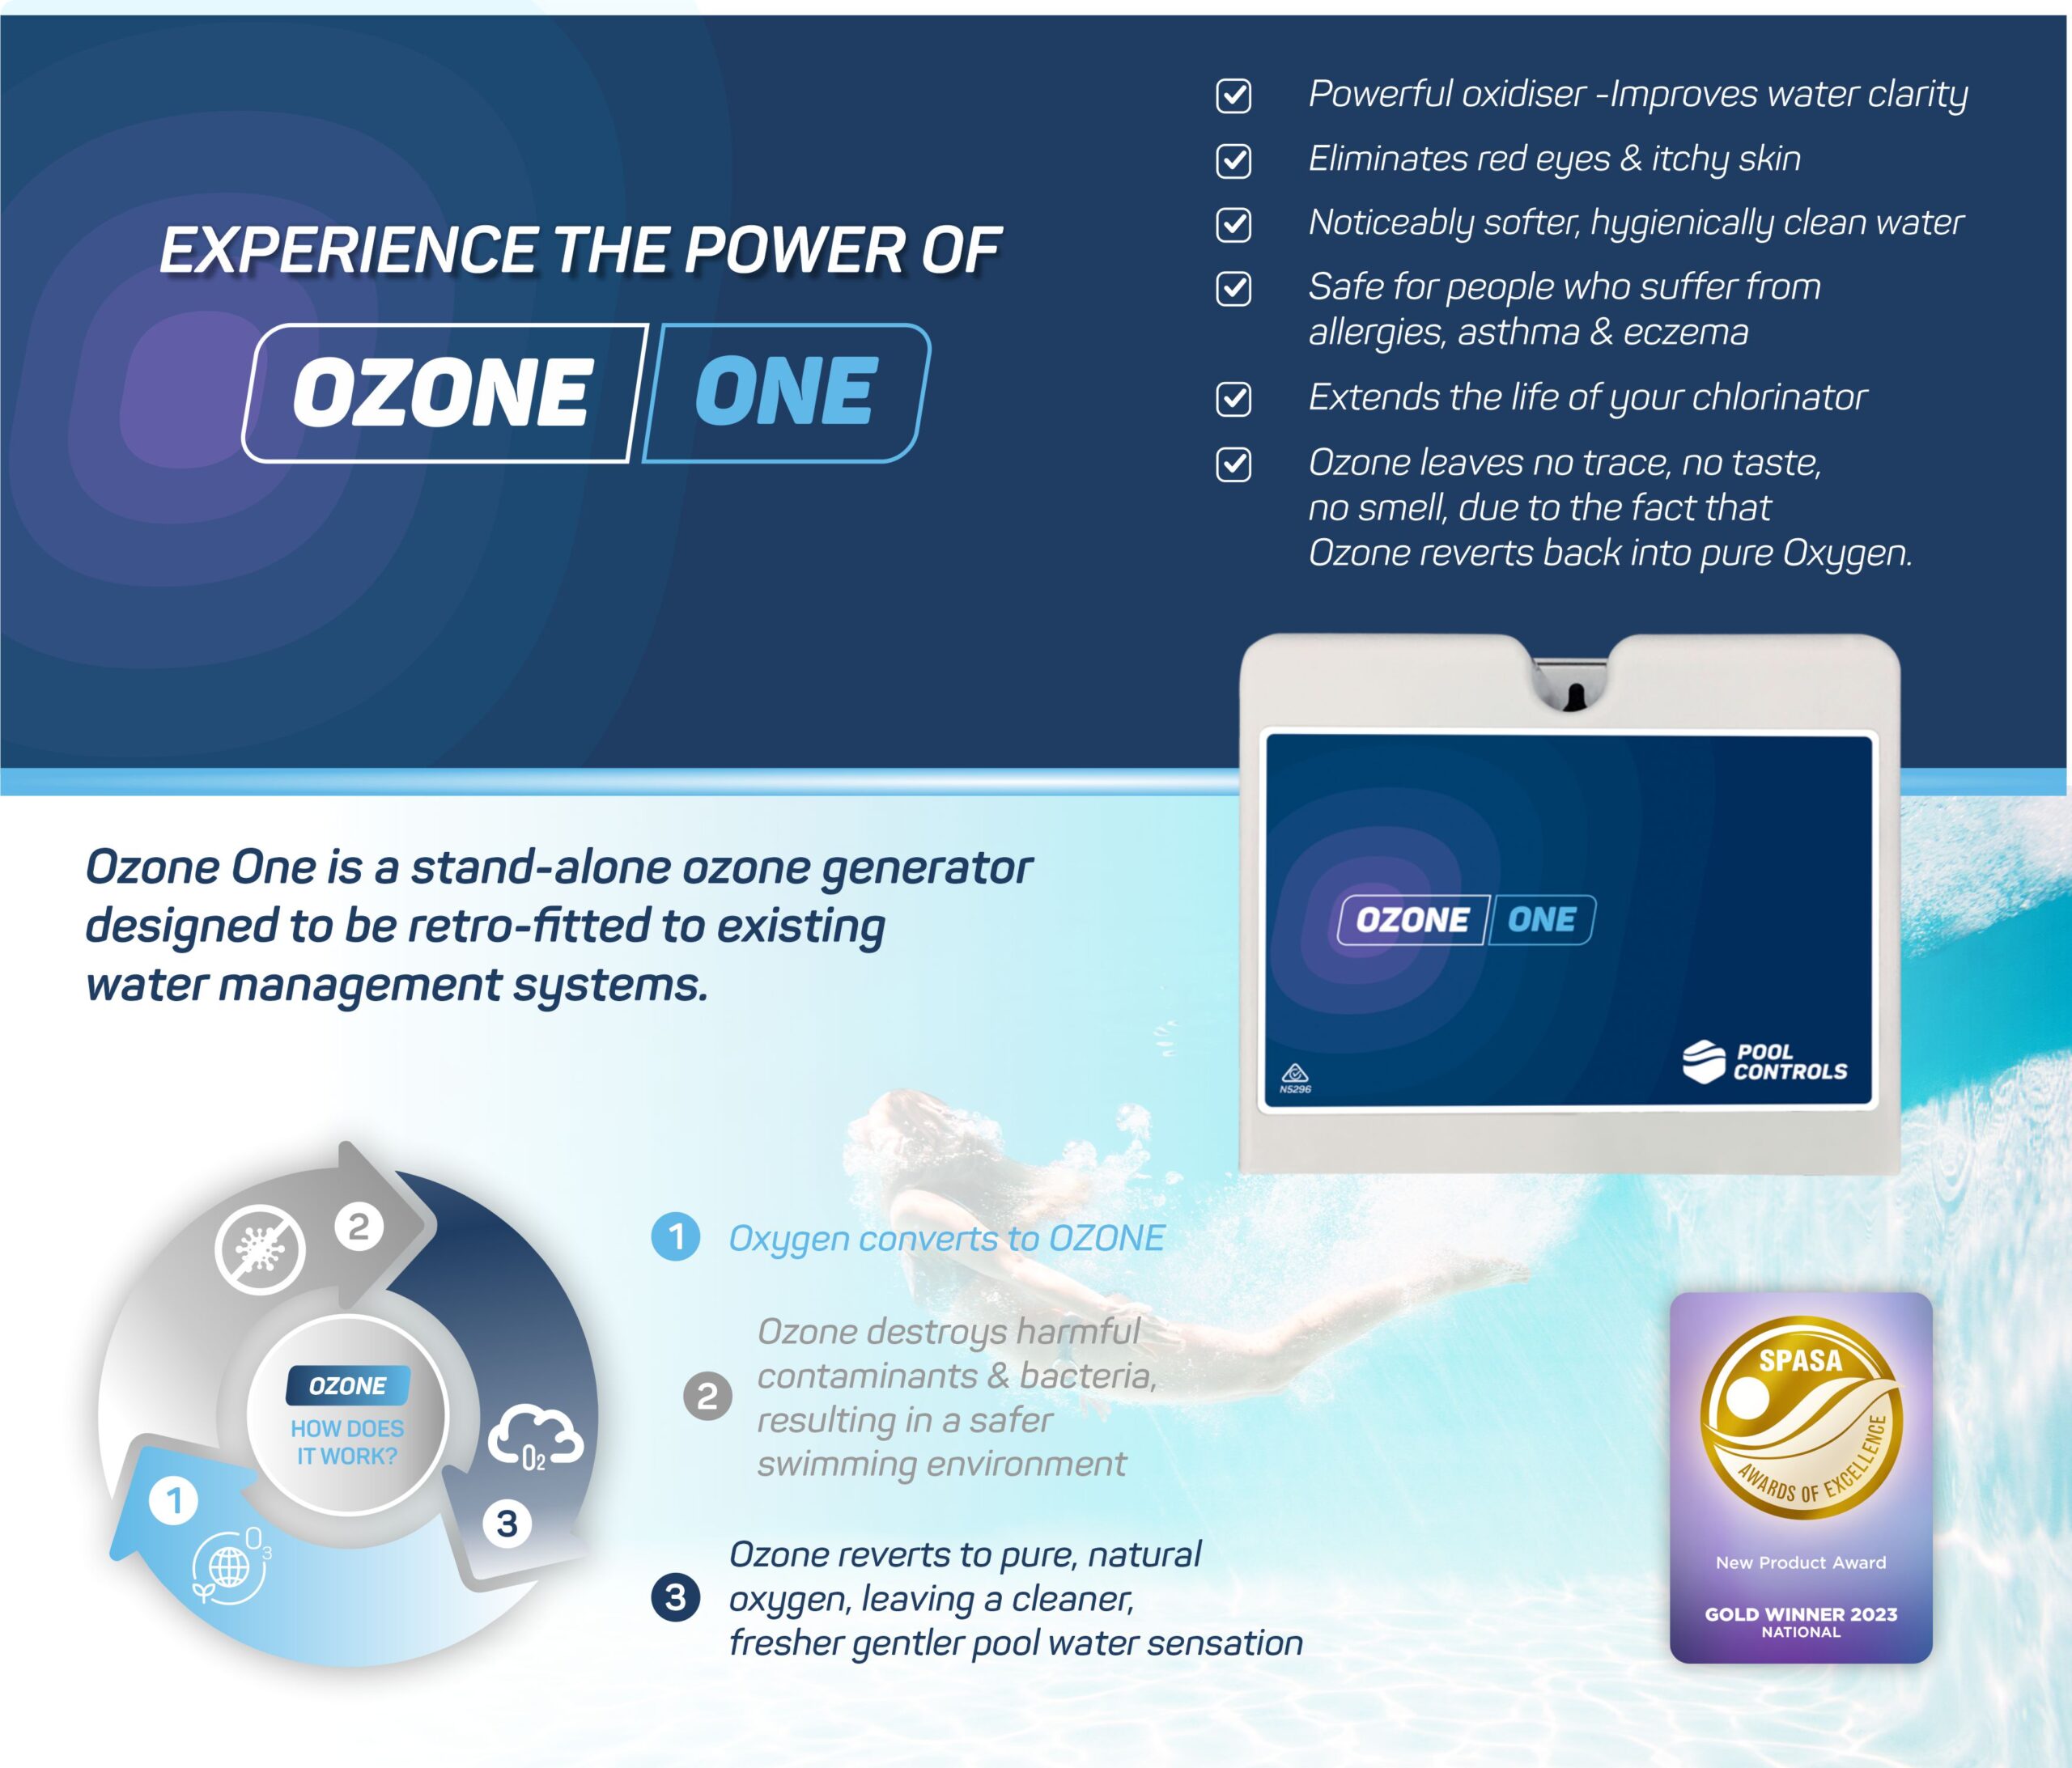 Ozone One